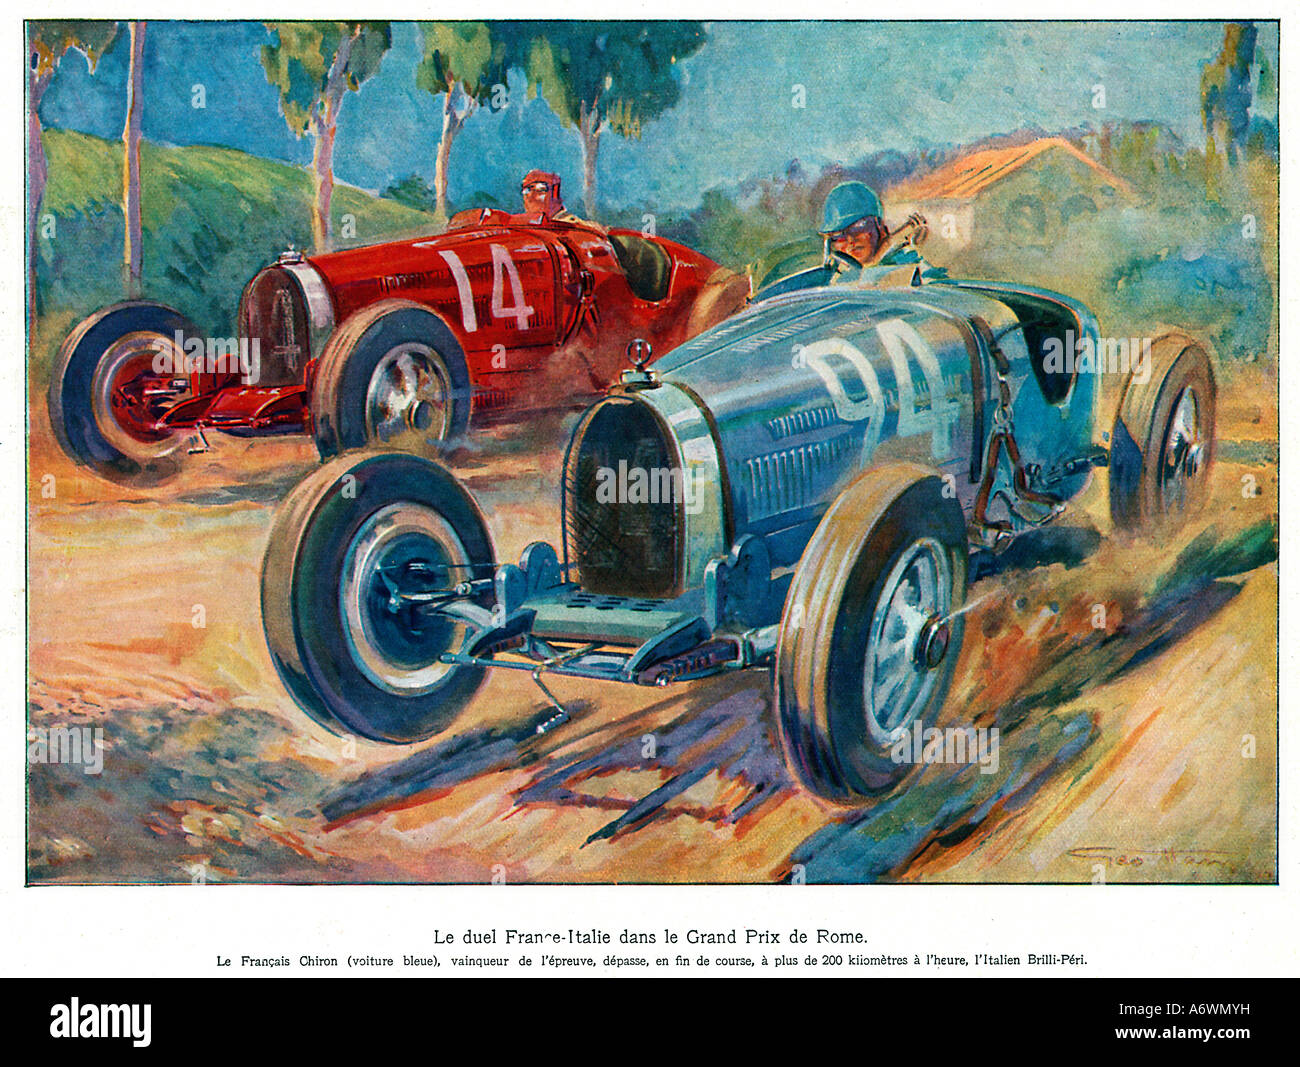 Grand Prix de Rome 1928 pilote français Louis Chiron dans le bleu Bugatti duels avec l'Italien Gastone Brilli Peri à plus de 200 km/h Banque D'Images